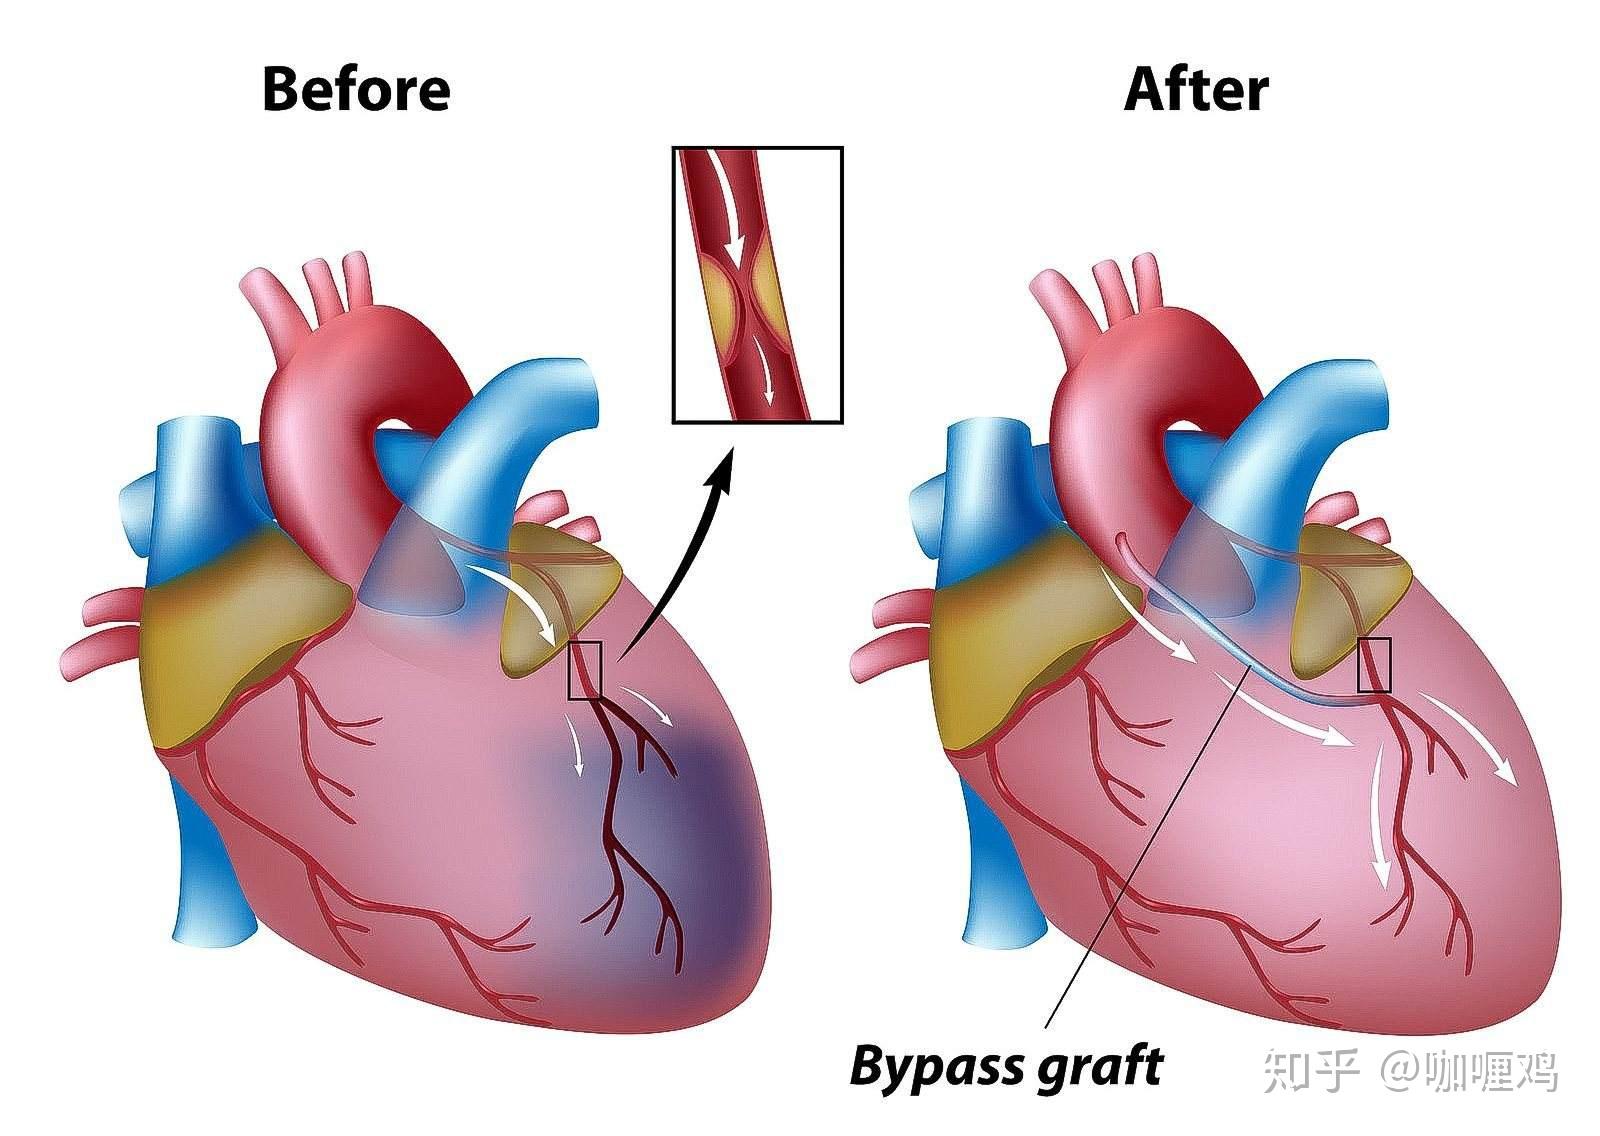 心脏搭桥手术 示意图图片